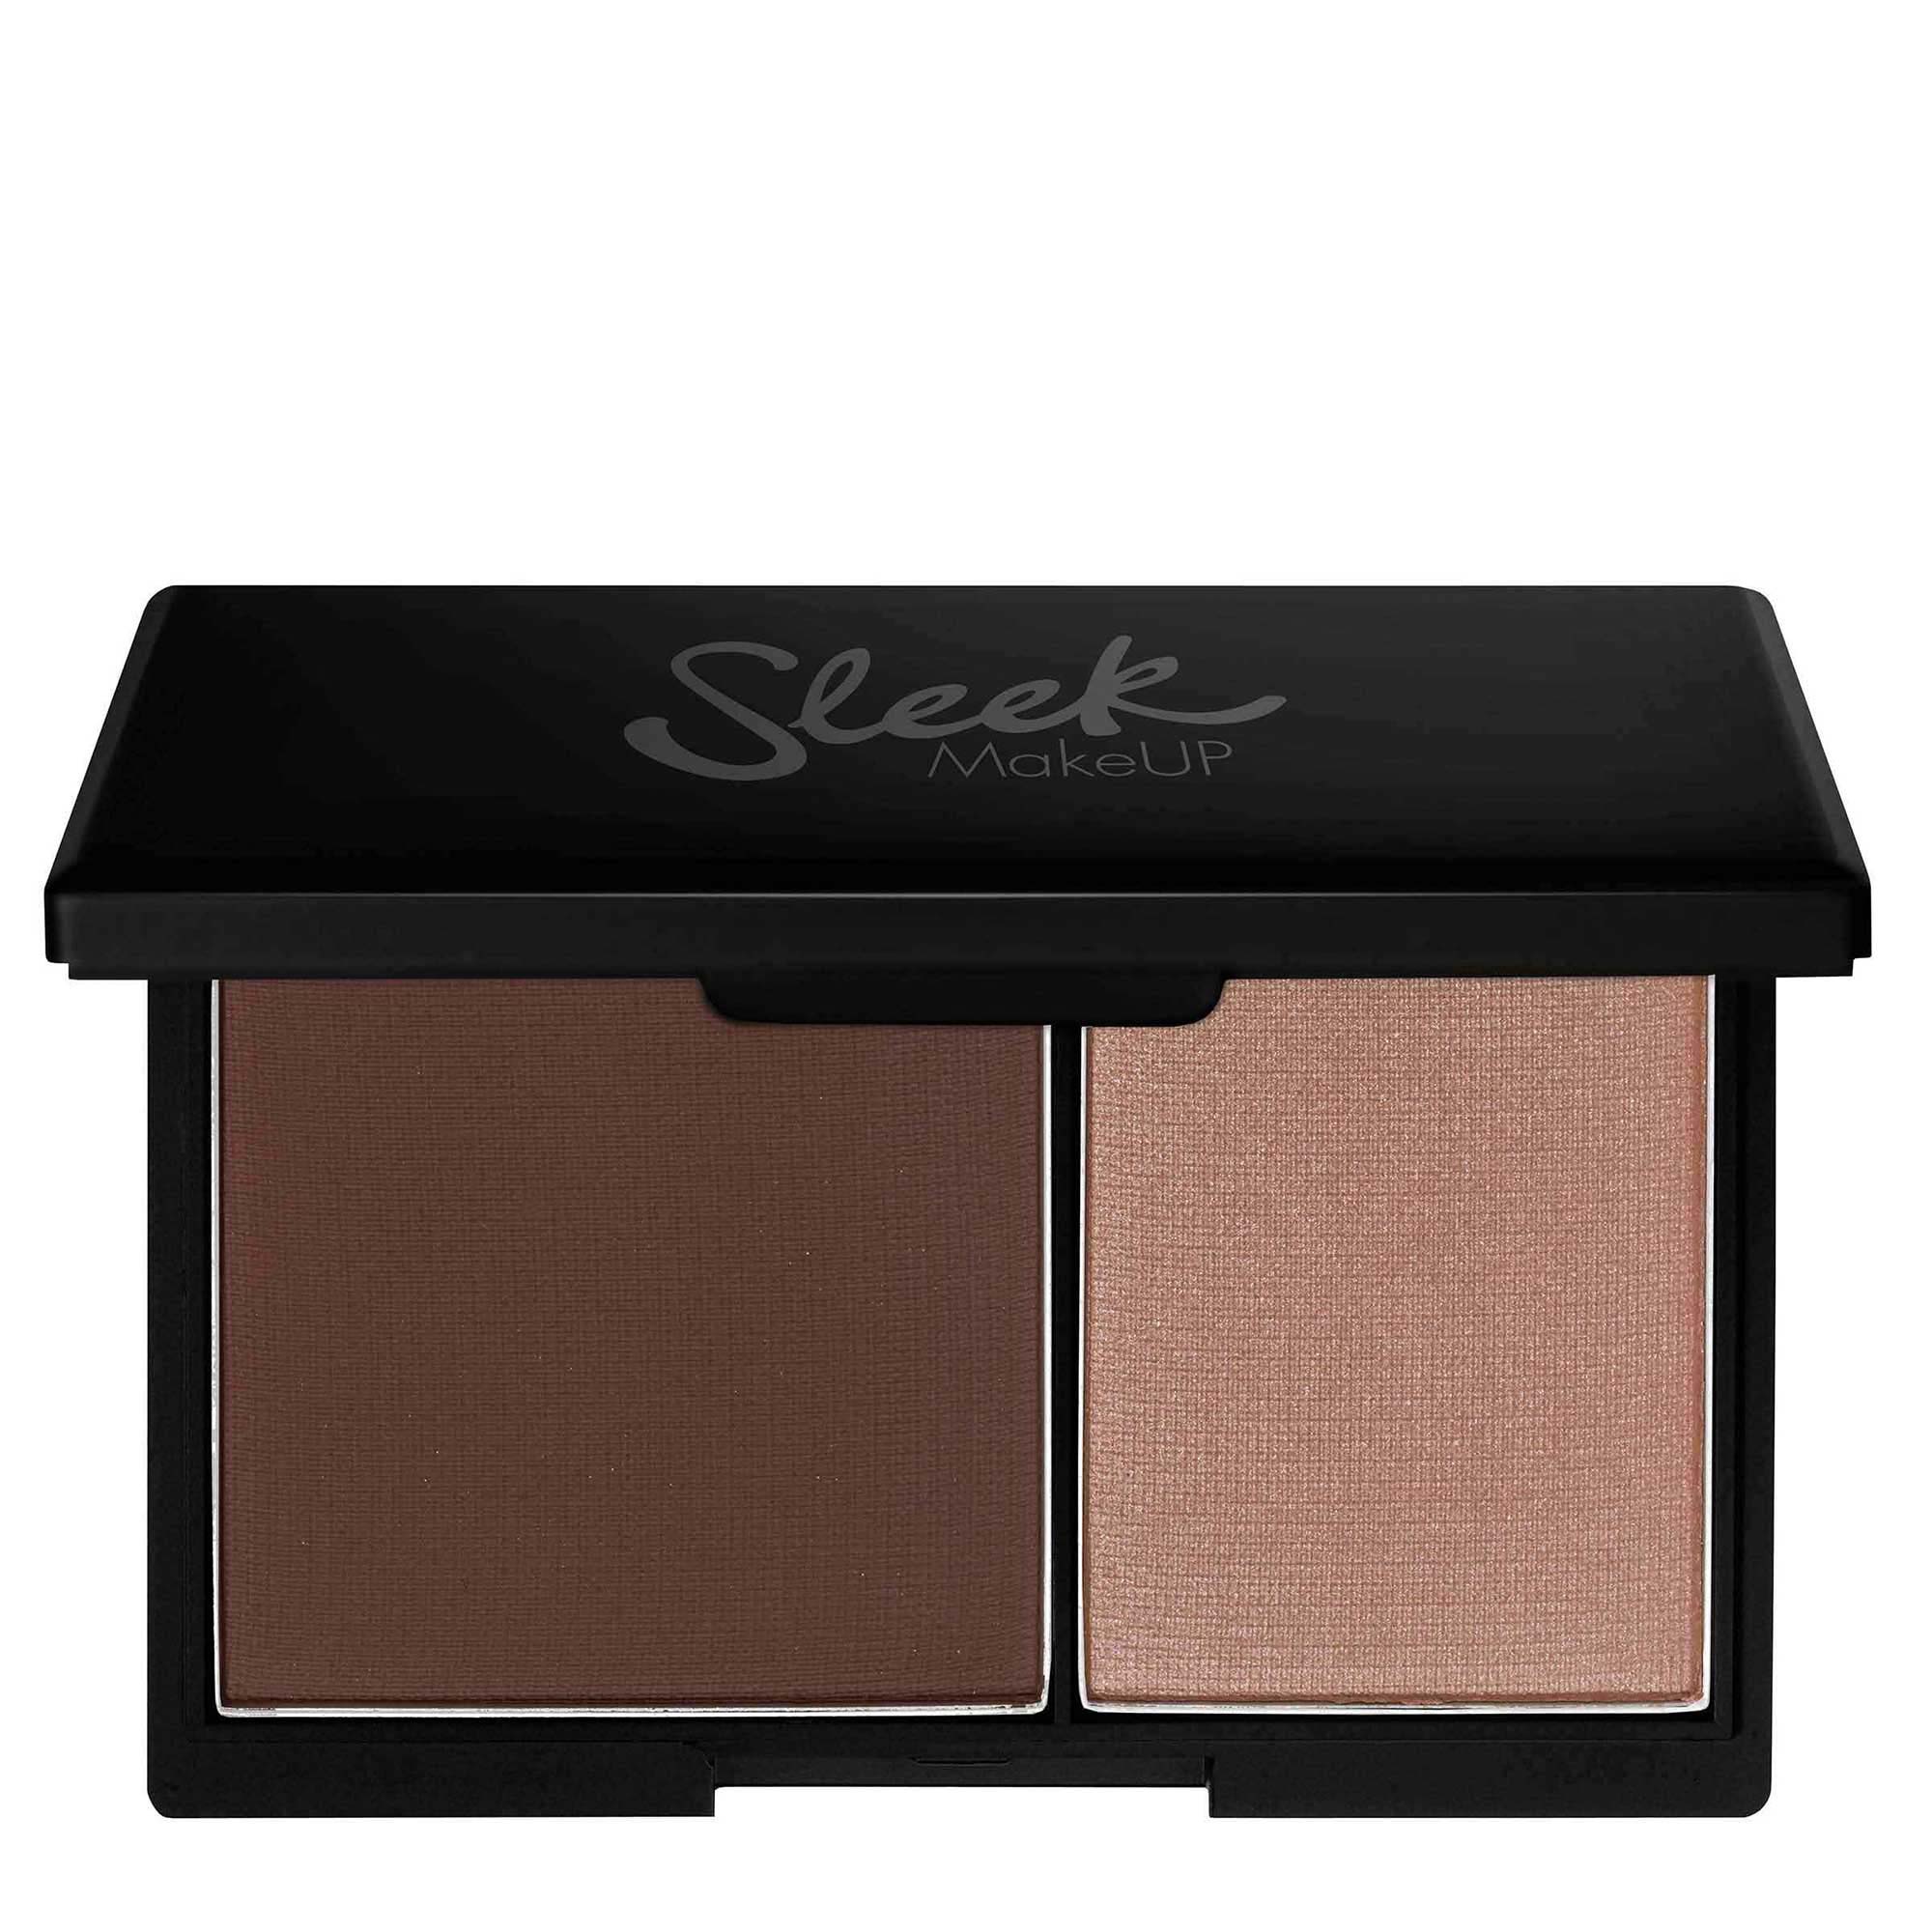 Sleek Makeup Face Contour Kit - Medium